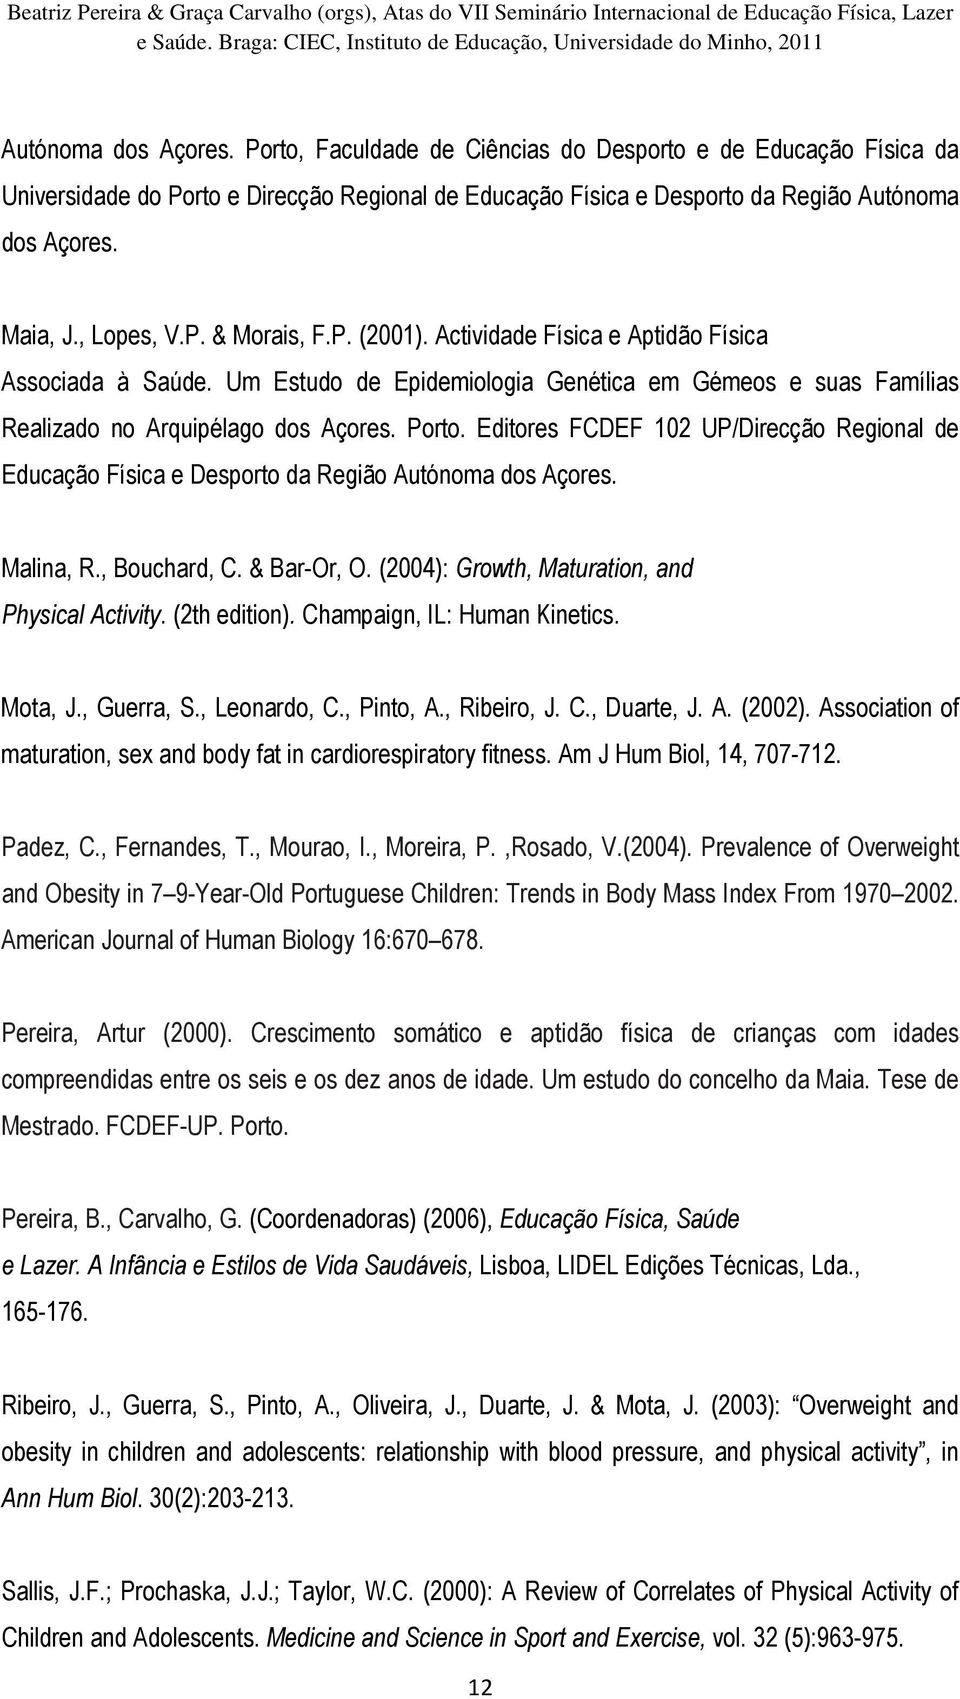 Editores FCDEF 102 UP/Direcção Regional de Educação Física e Desporto da Região Autónoma dos Açores. Malina, R., Bouchard, C. & Bar-Or, O. (2004): Growth, Maturation, and Physical Activity.